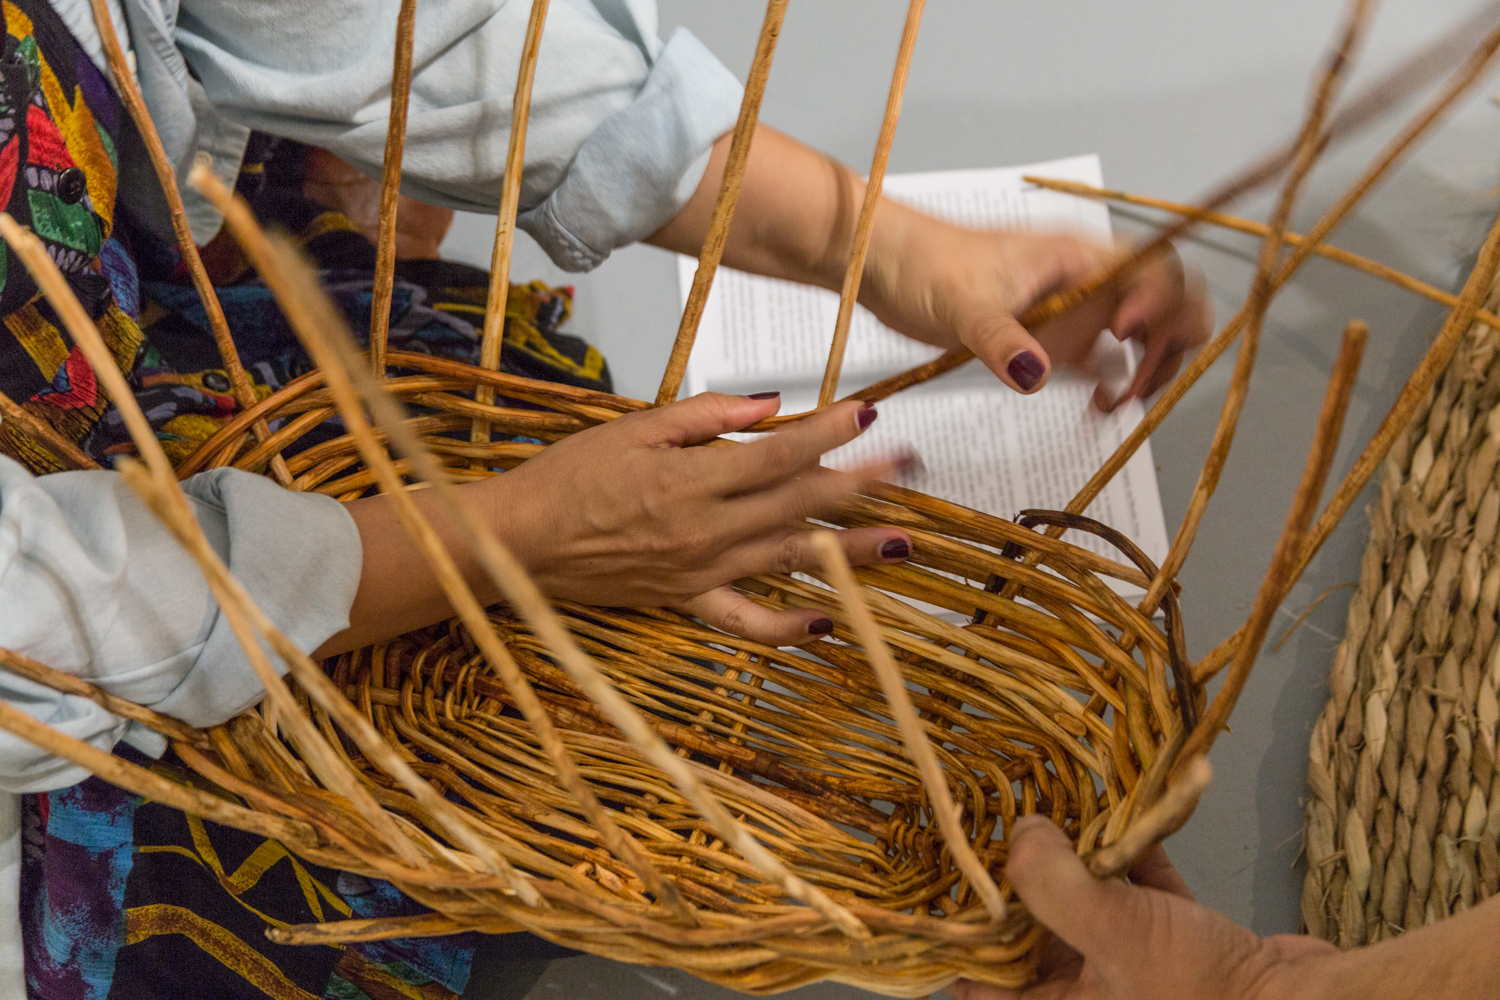 Hands weaving a basket together